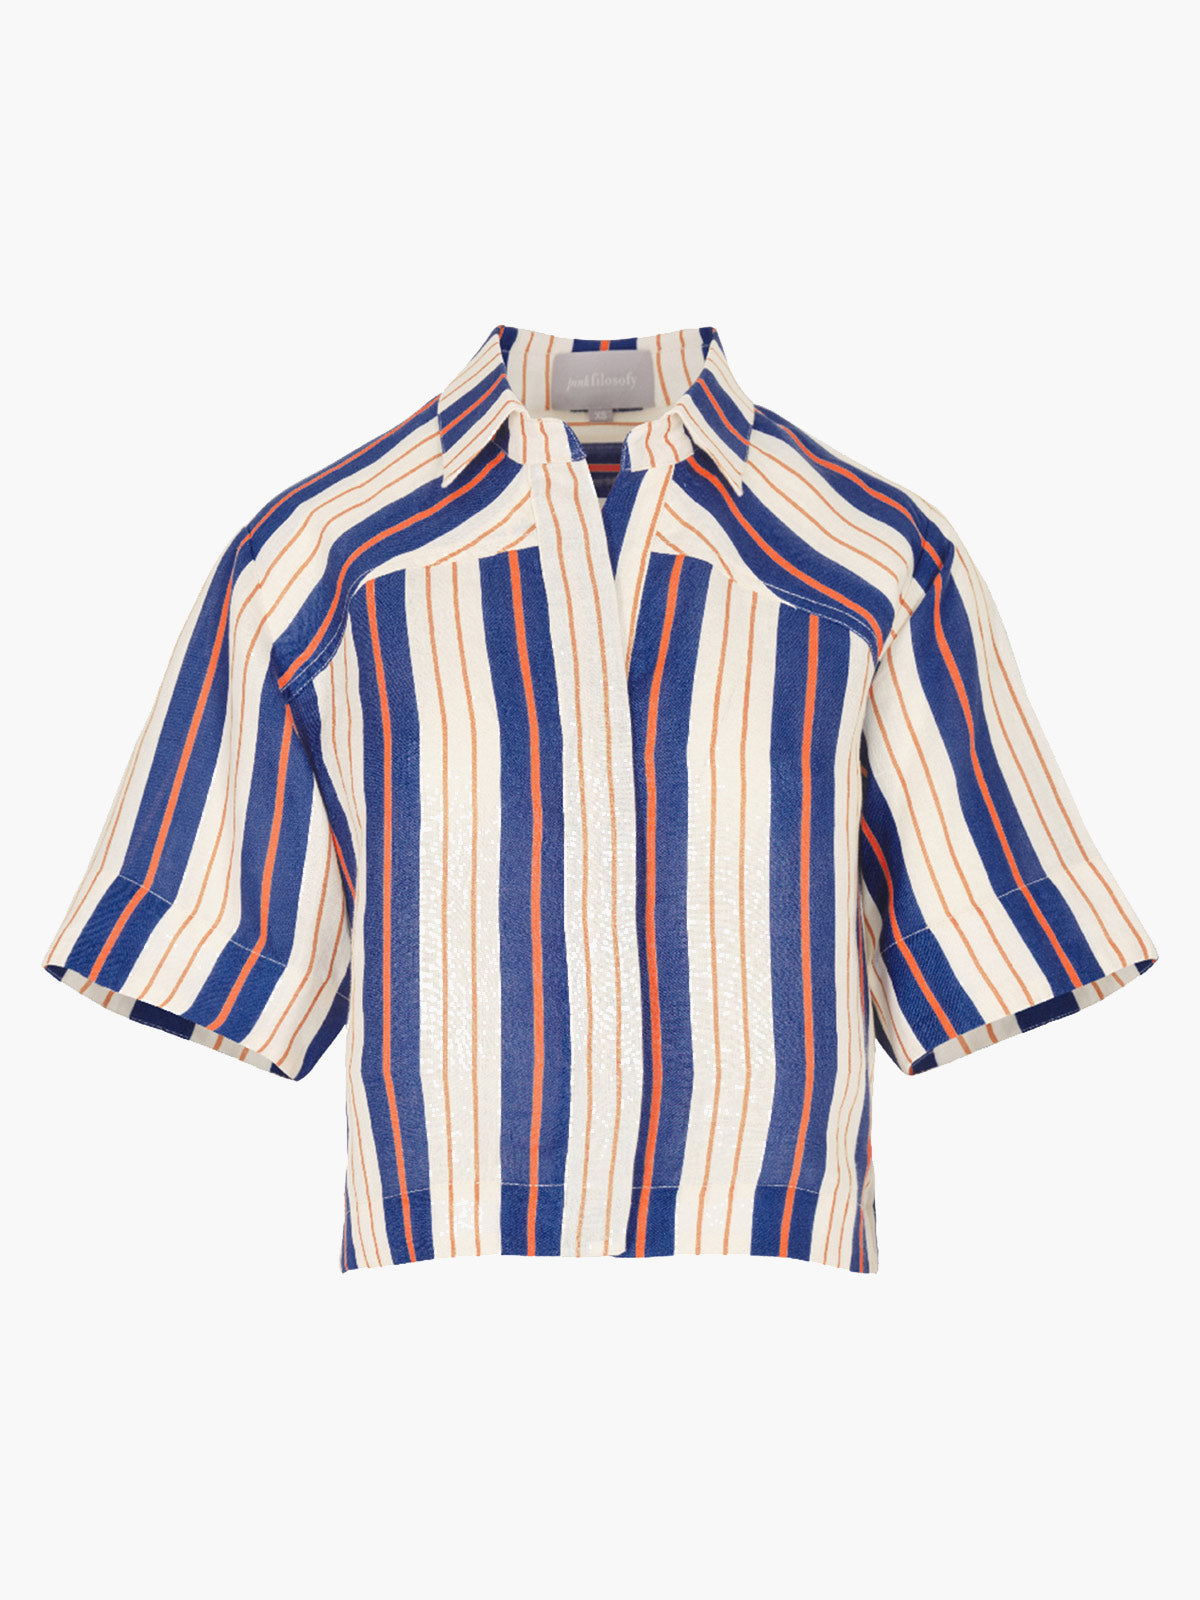 Vesta Shirt | Blue Stripes